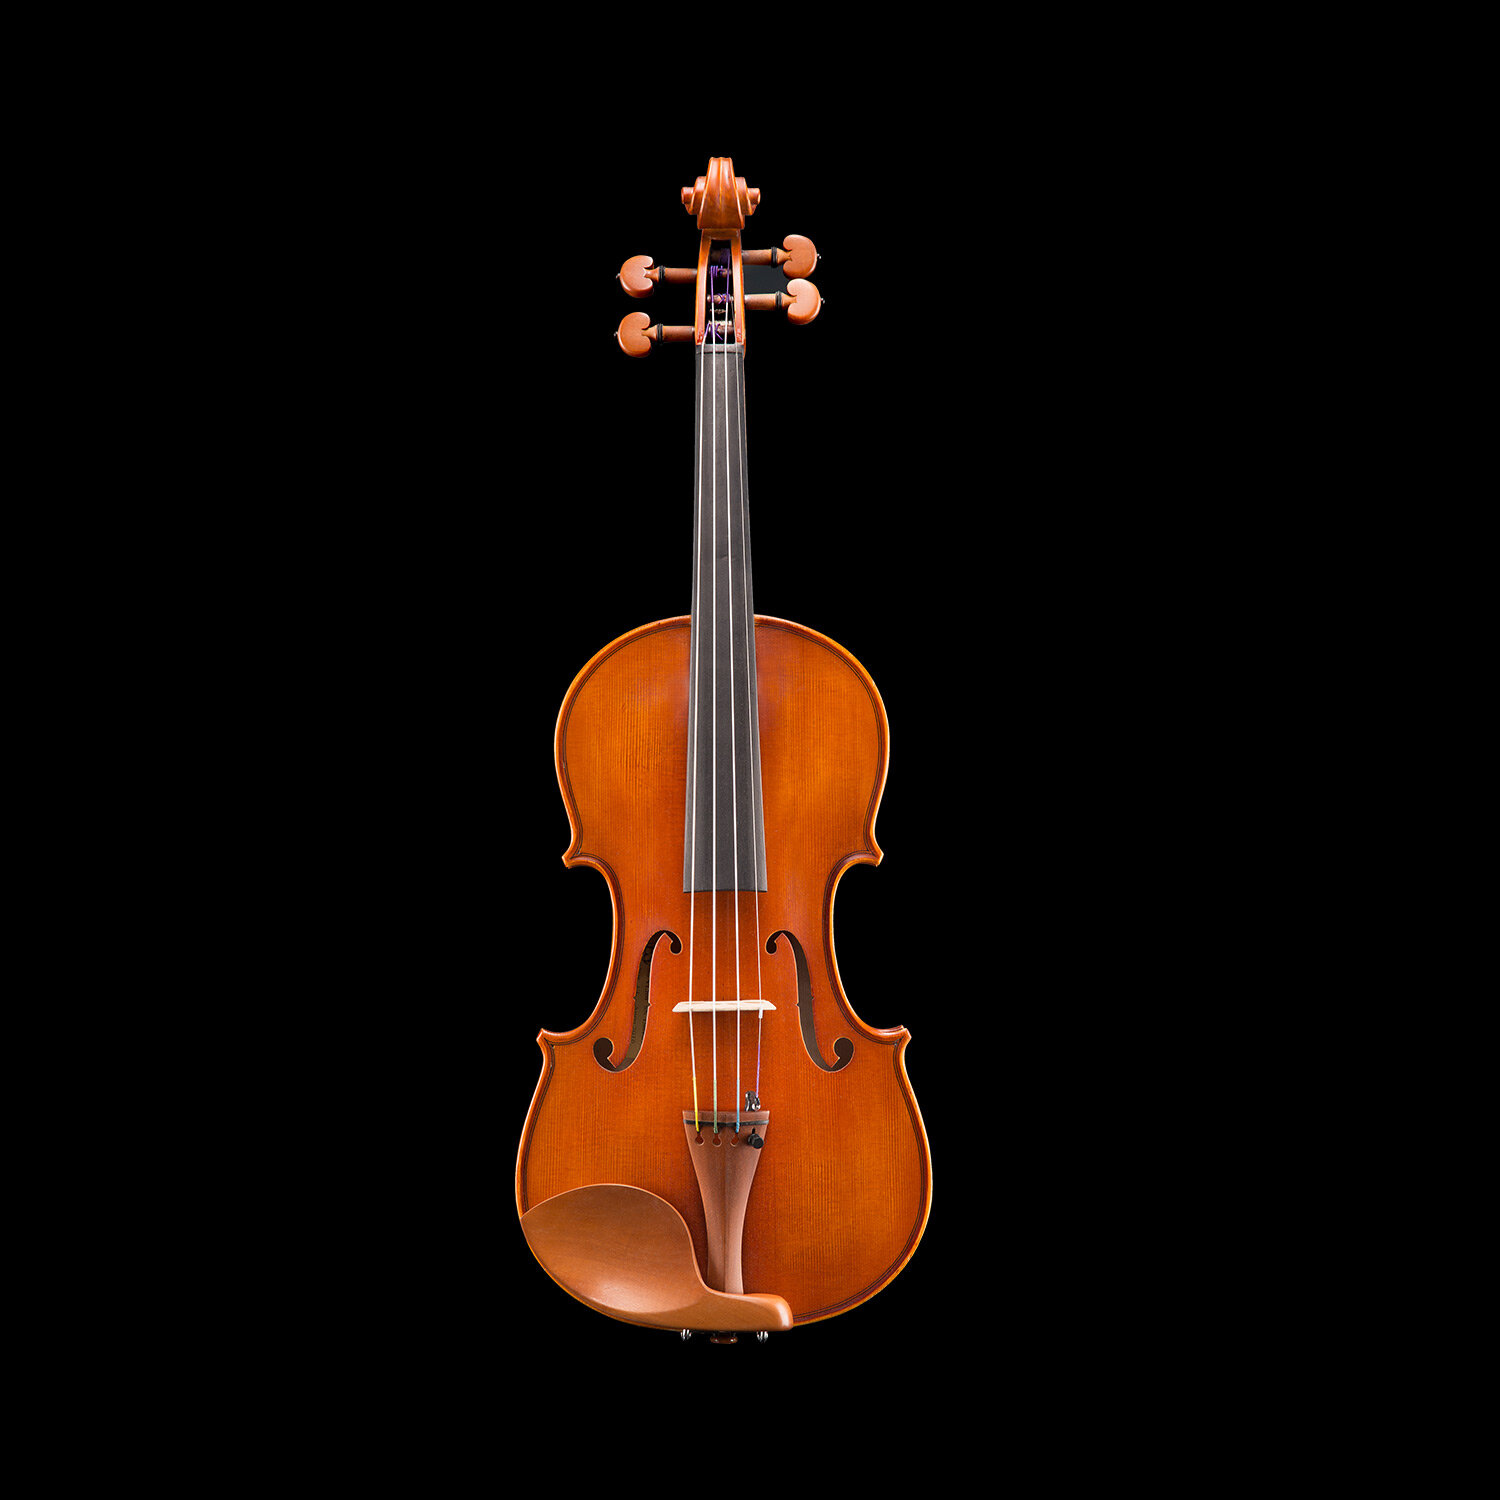 Tectonic lunge forsvinde Andreas Eastman VL200 1/16 - 3/4 Violins — Vermont Violins